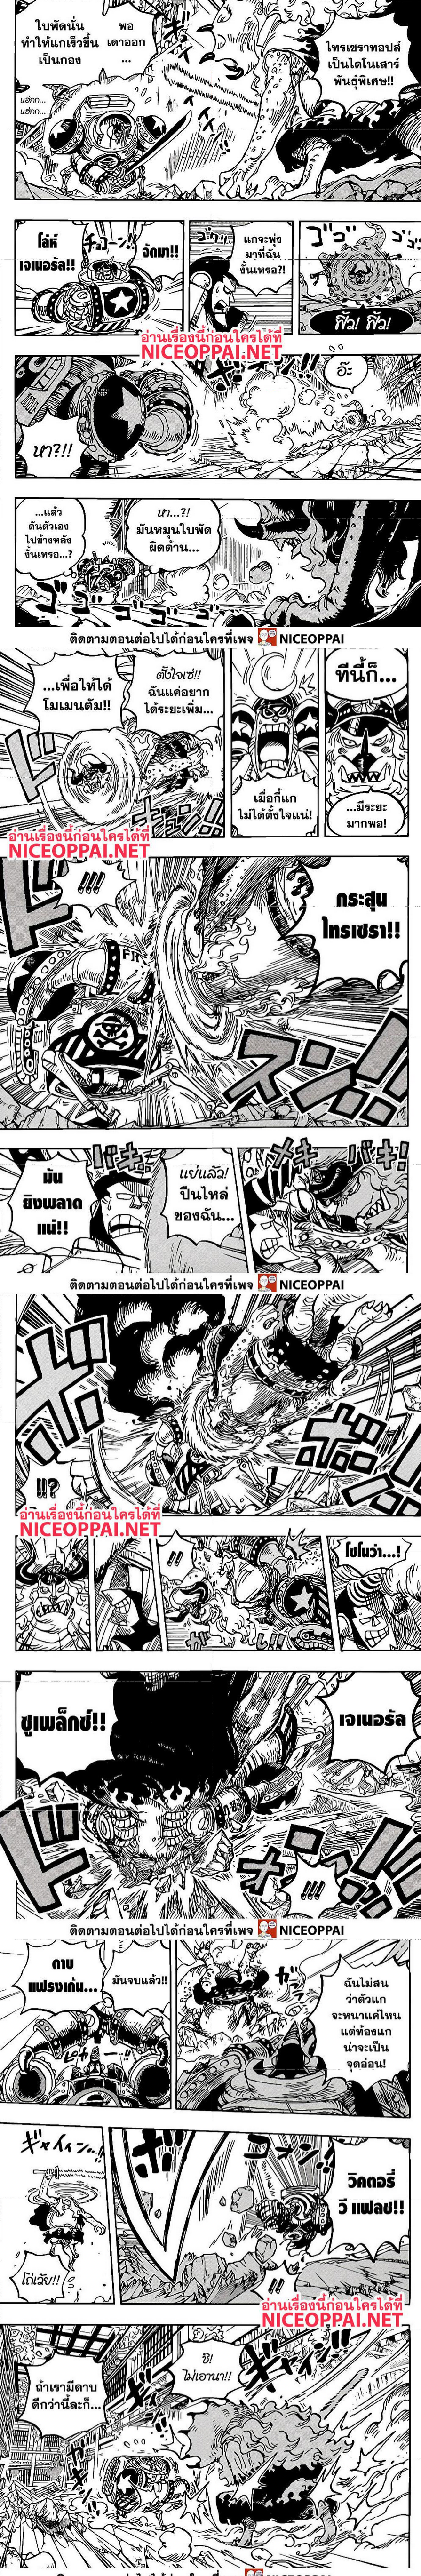 One Piece1019 3